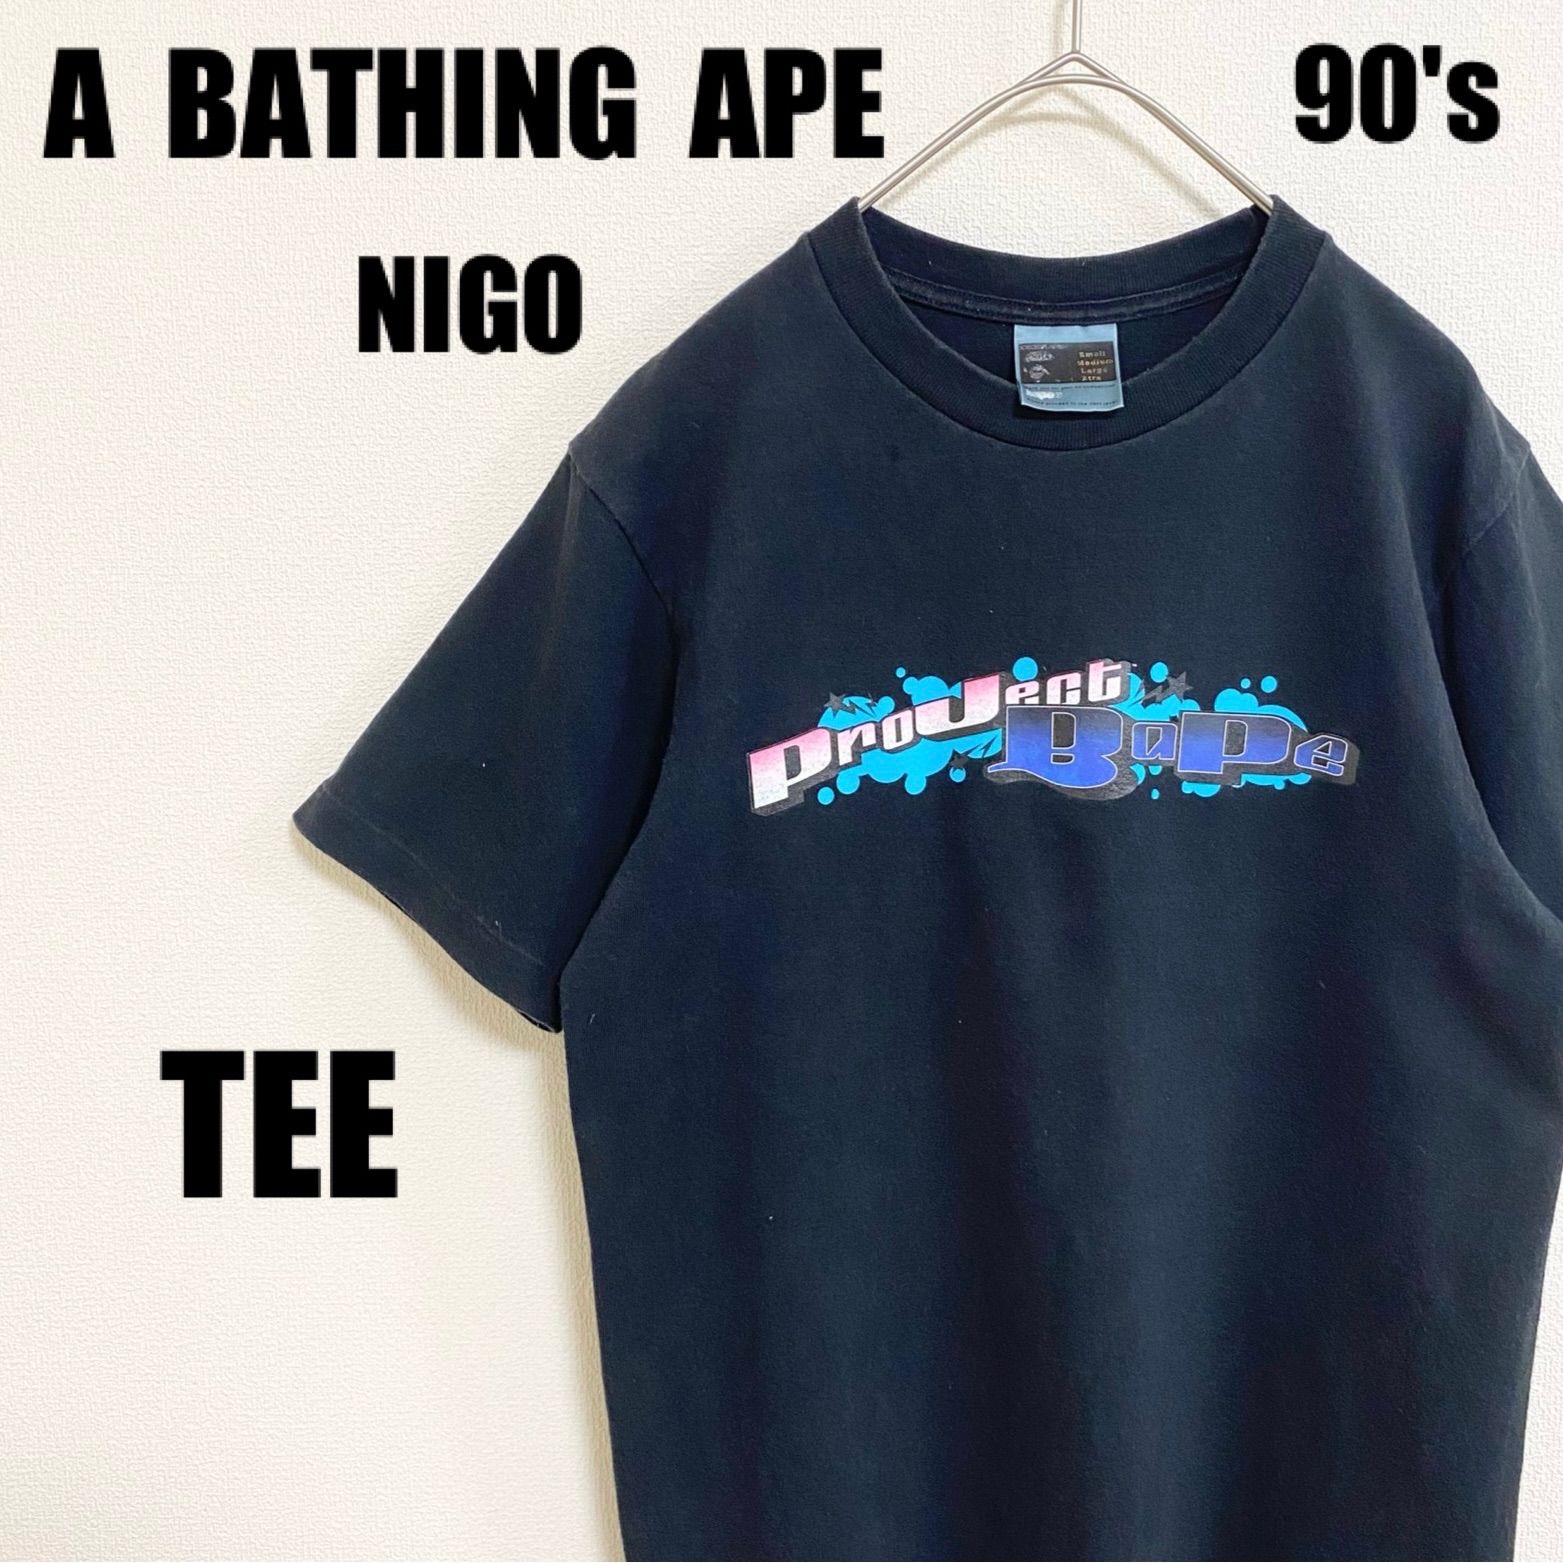 90s アベイシングエイプ Tシャツ A BATHING APE TEE 黒 ブラック 